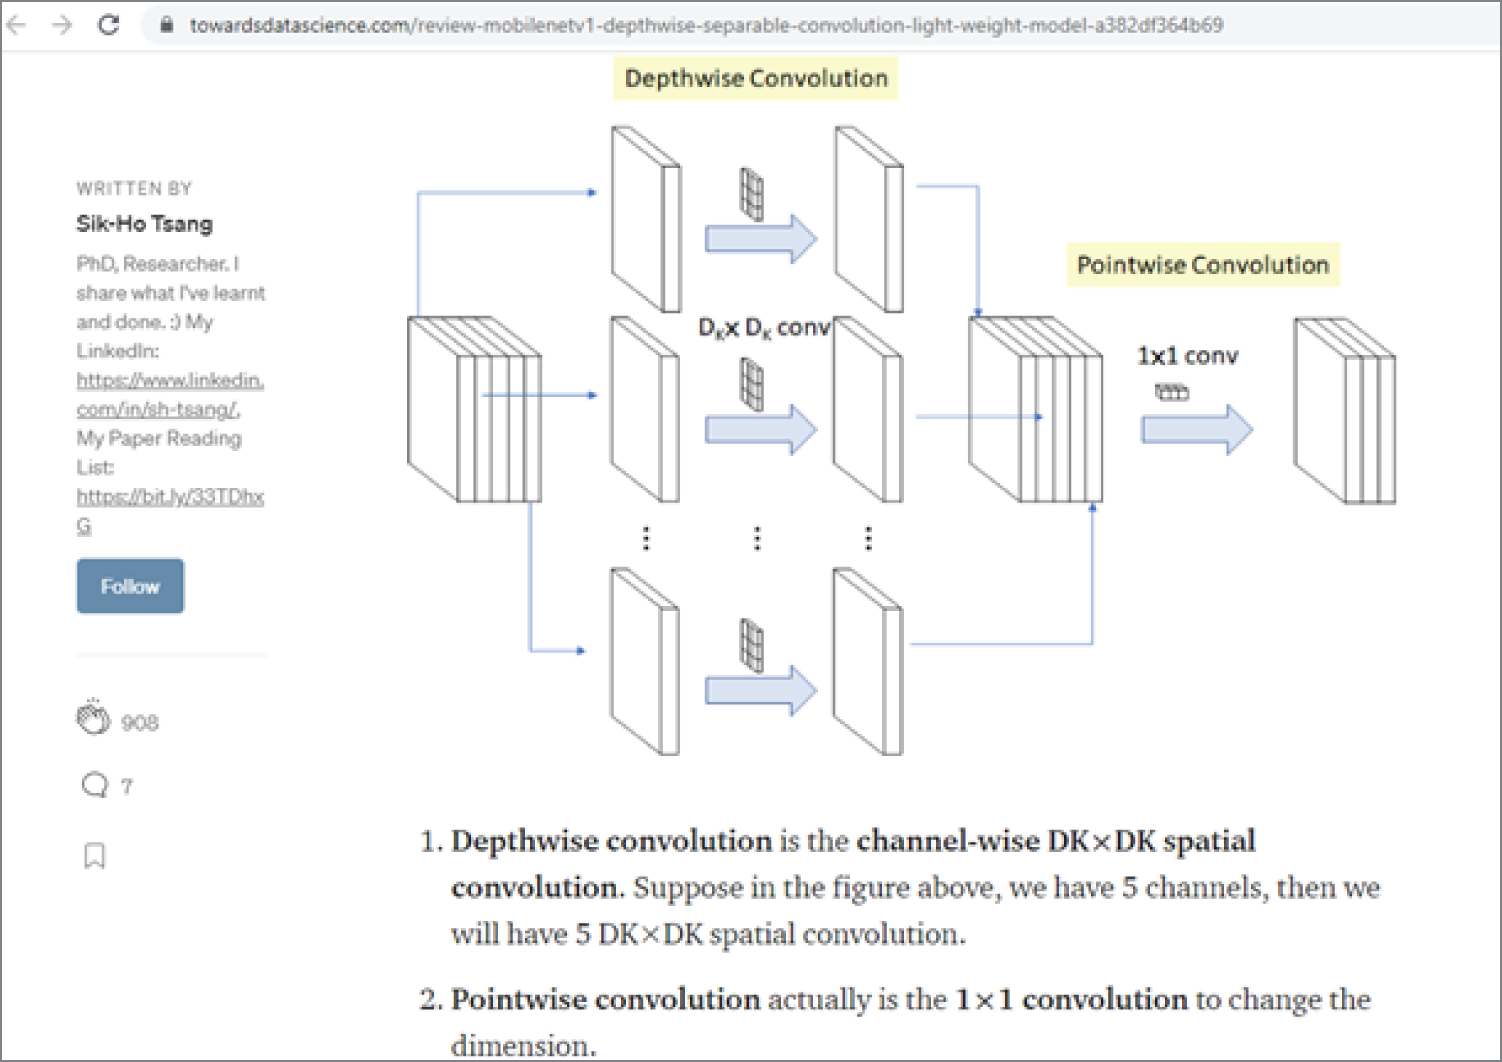 Snapshot of review: MobileNetV1 — Depthwise Separable Convolution (Light Weight Model).